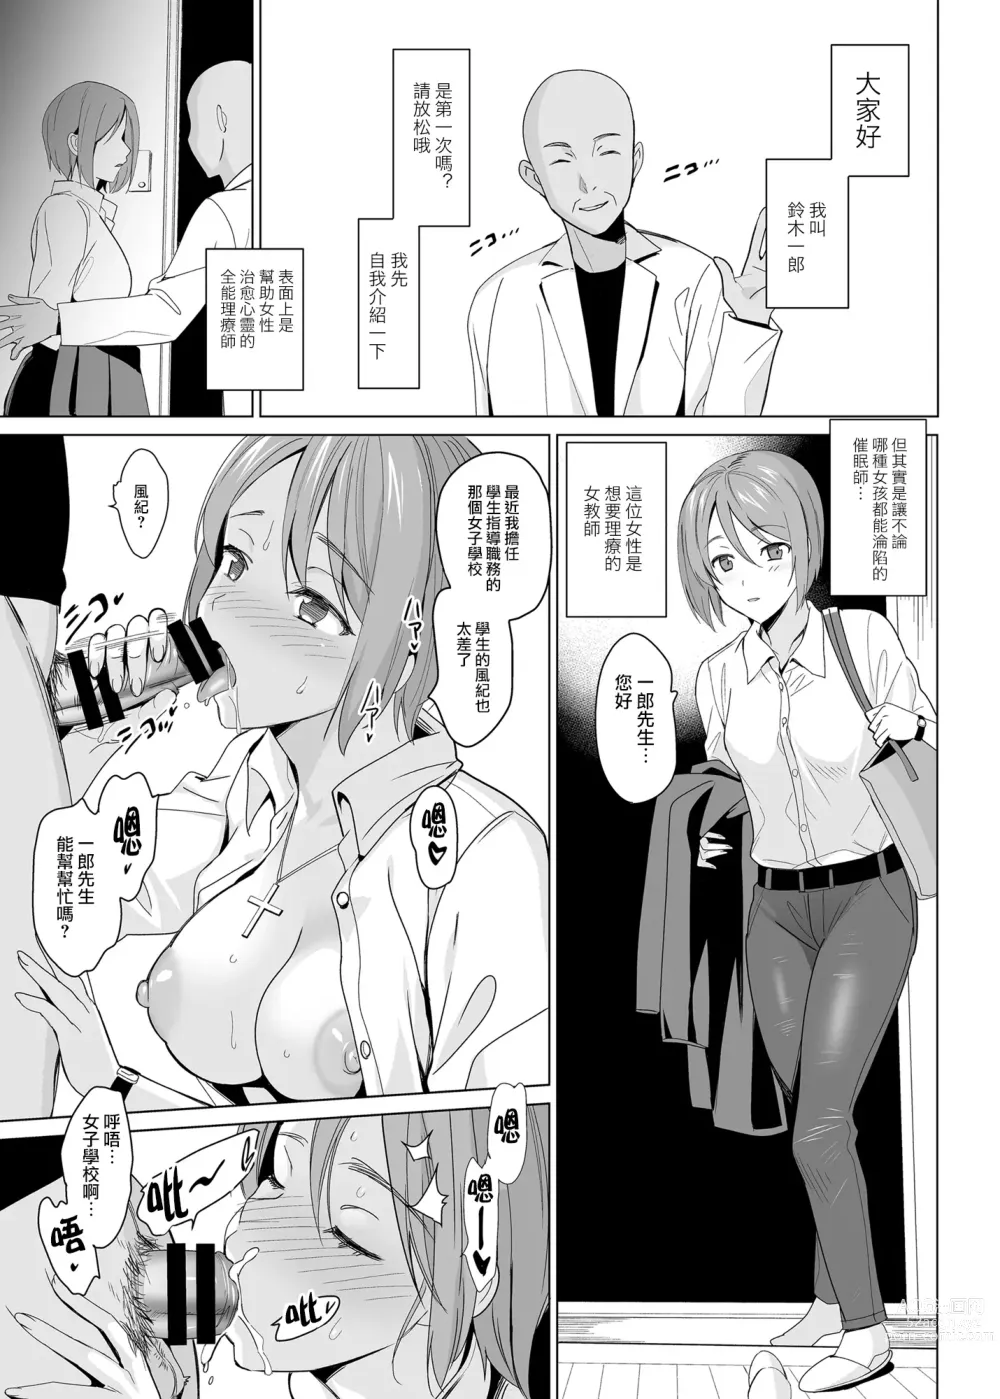 Page 13 of manga 白百合姉妹攻略総集編